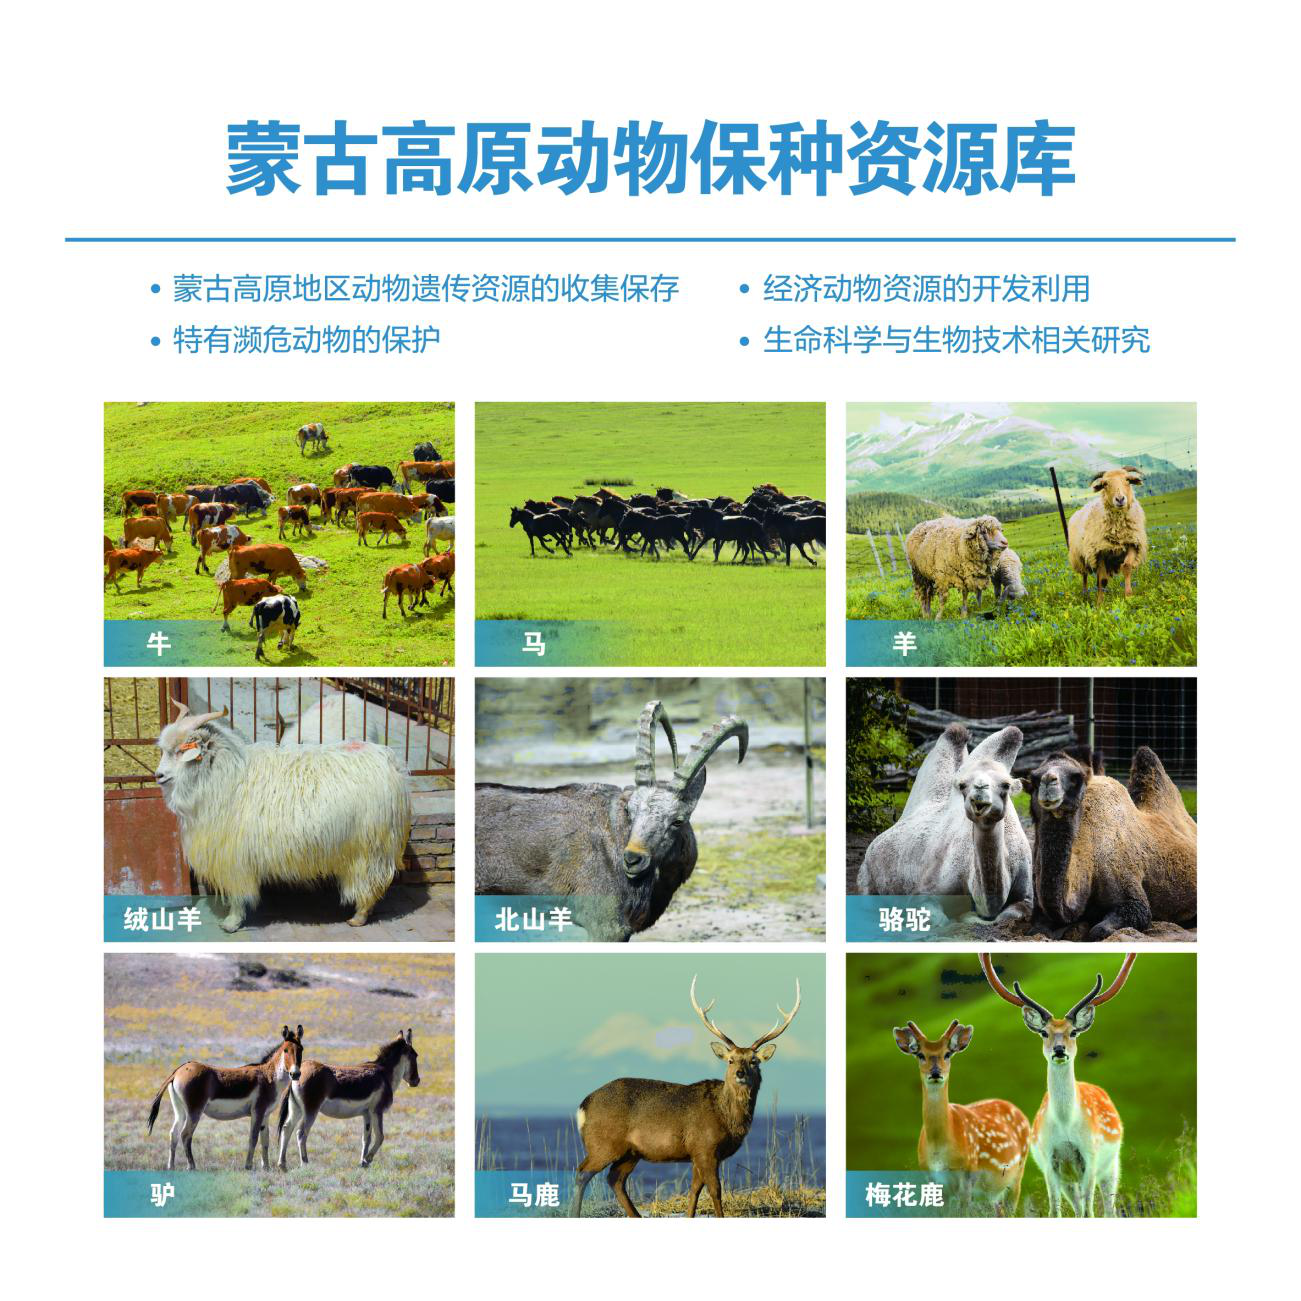 优然牧业标普CSA评估得分超全球85%参评同业 排中国乳业上游企业第一